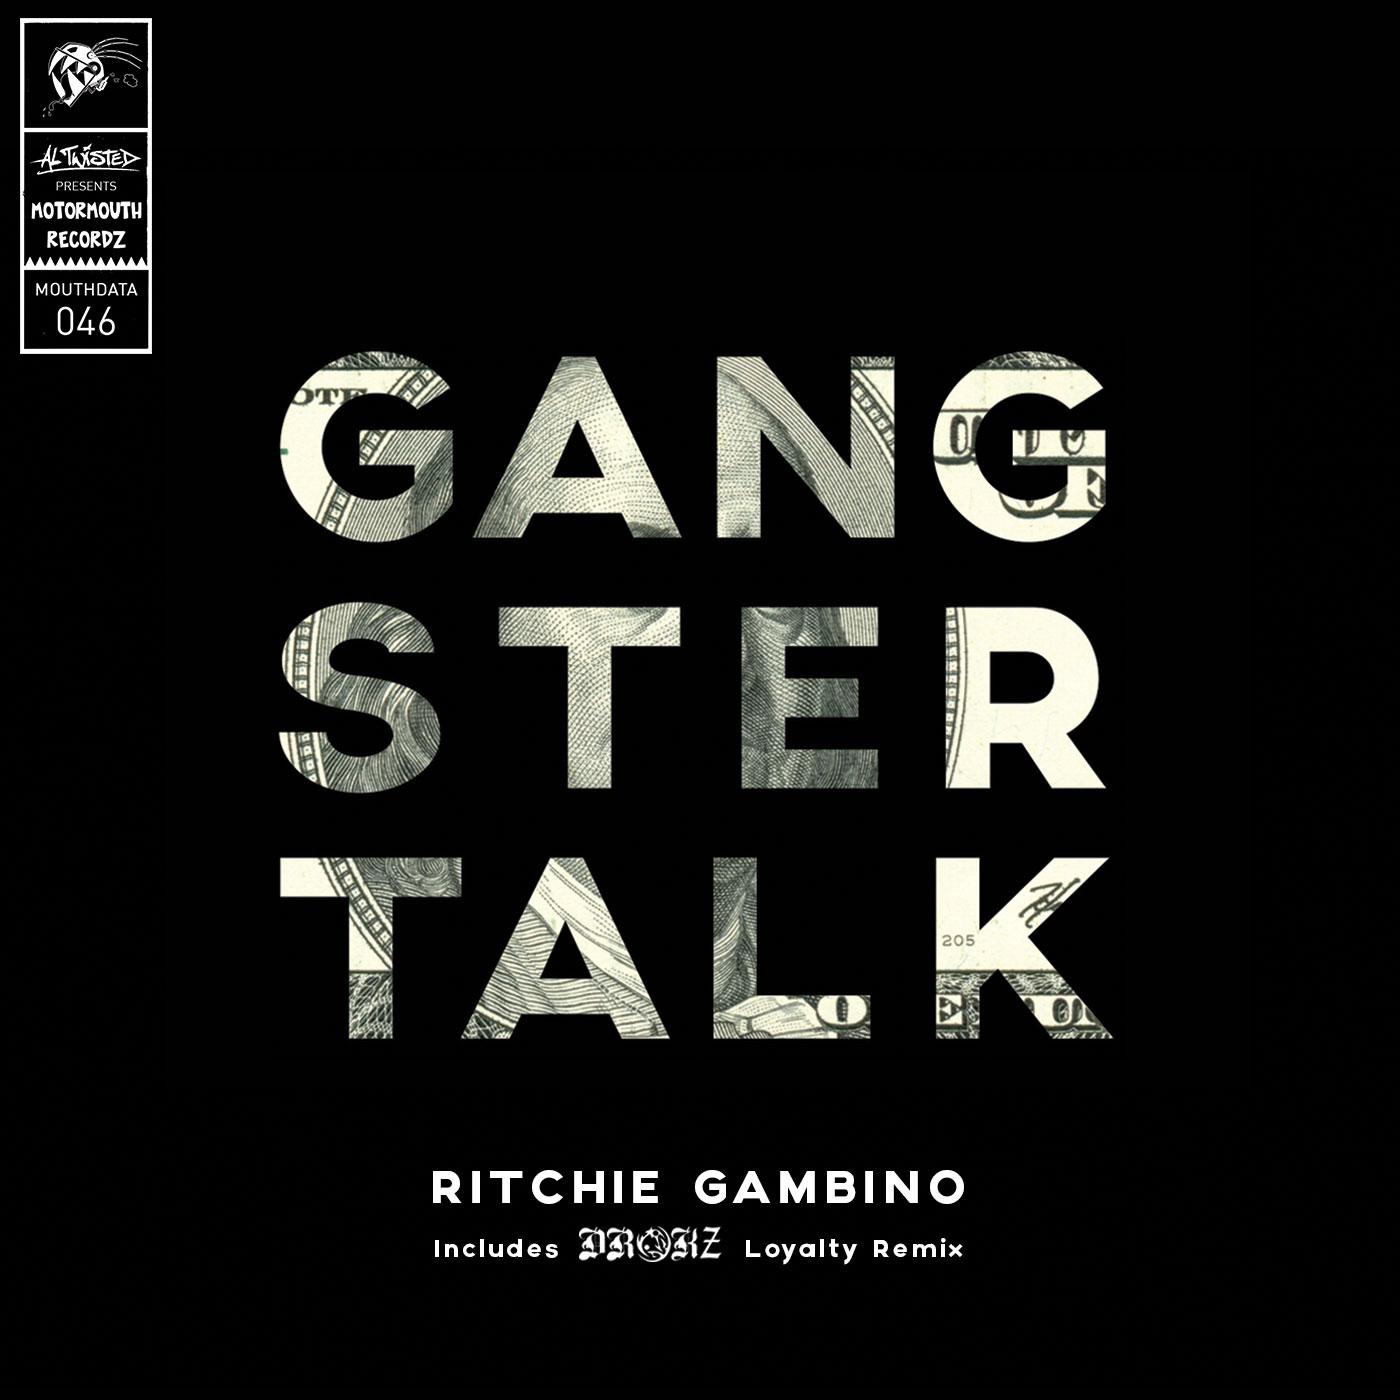 Ritchie gambino - Hey ***** (Original Mix)